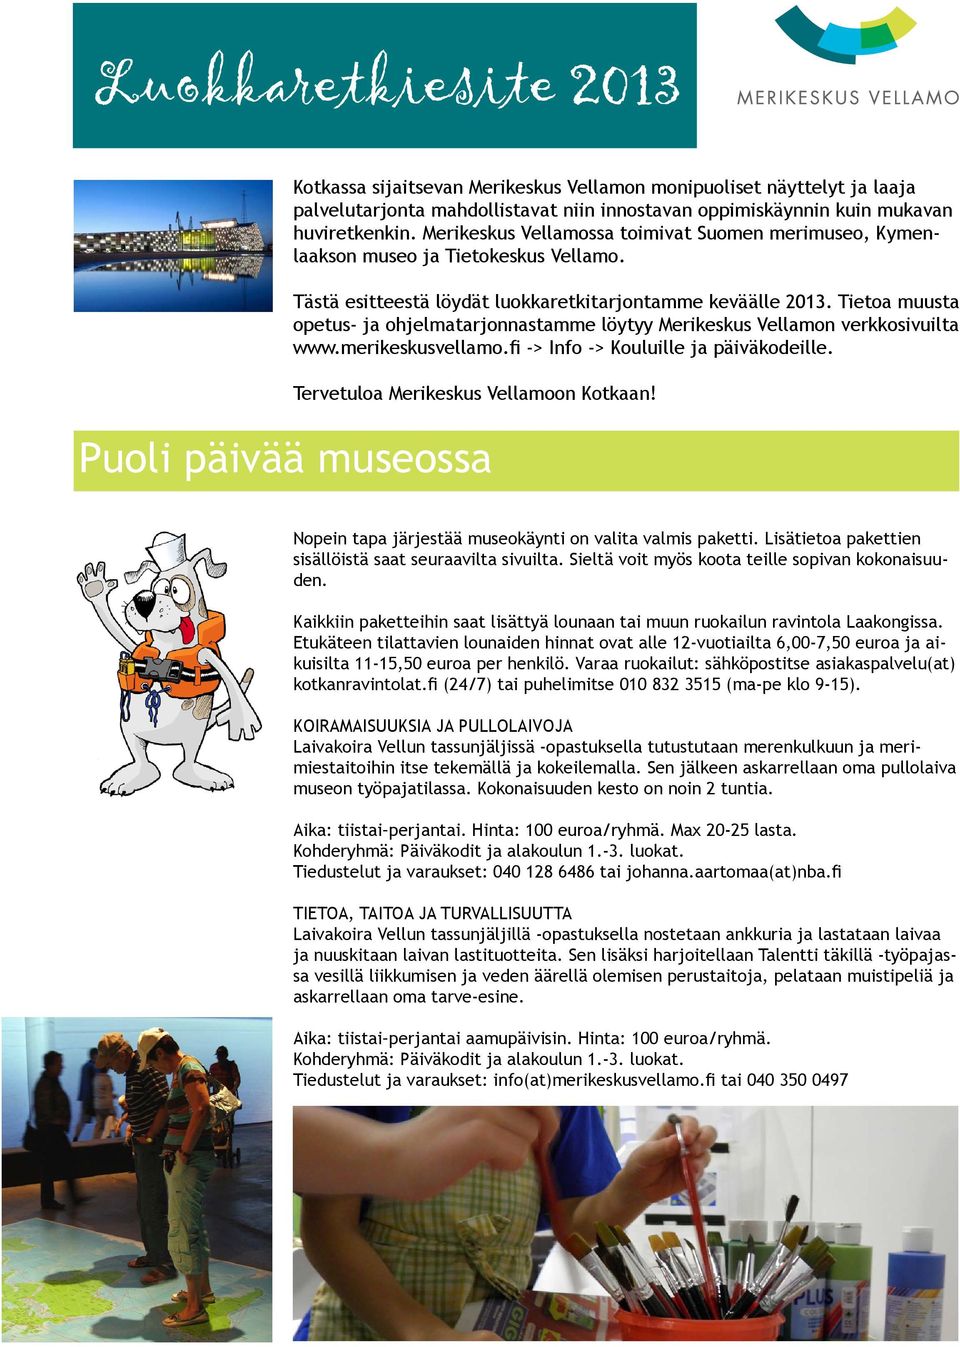 Tietoa muusta opetus- ja ohjelmatarjonnastamme löytyy Merikeskus Vellamon verkkosivuilta www.merikeskusvellamo.fi -> Info -> Kouluille ja päiväkodeille. Tervetuloa Merikeskus Vellamoon Kotkaan!